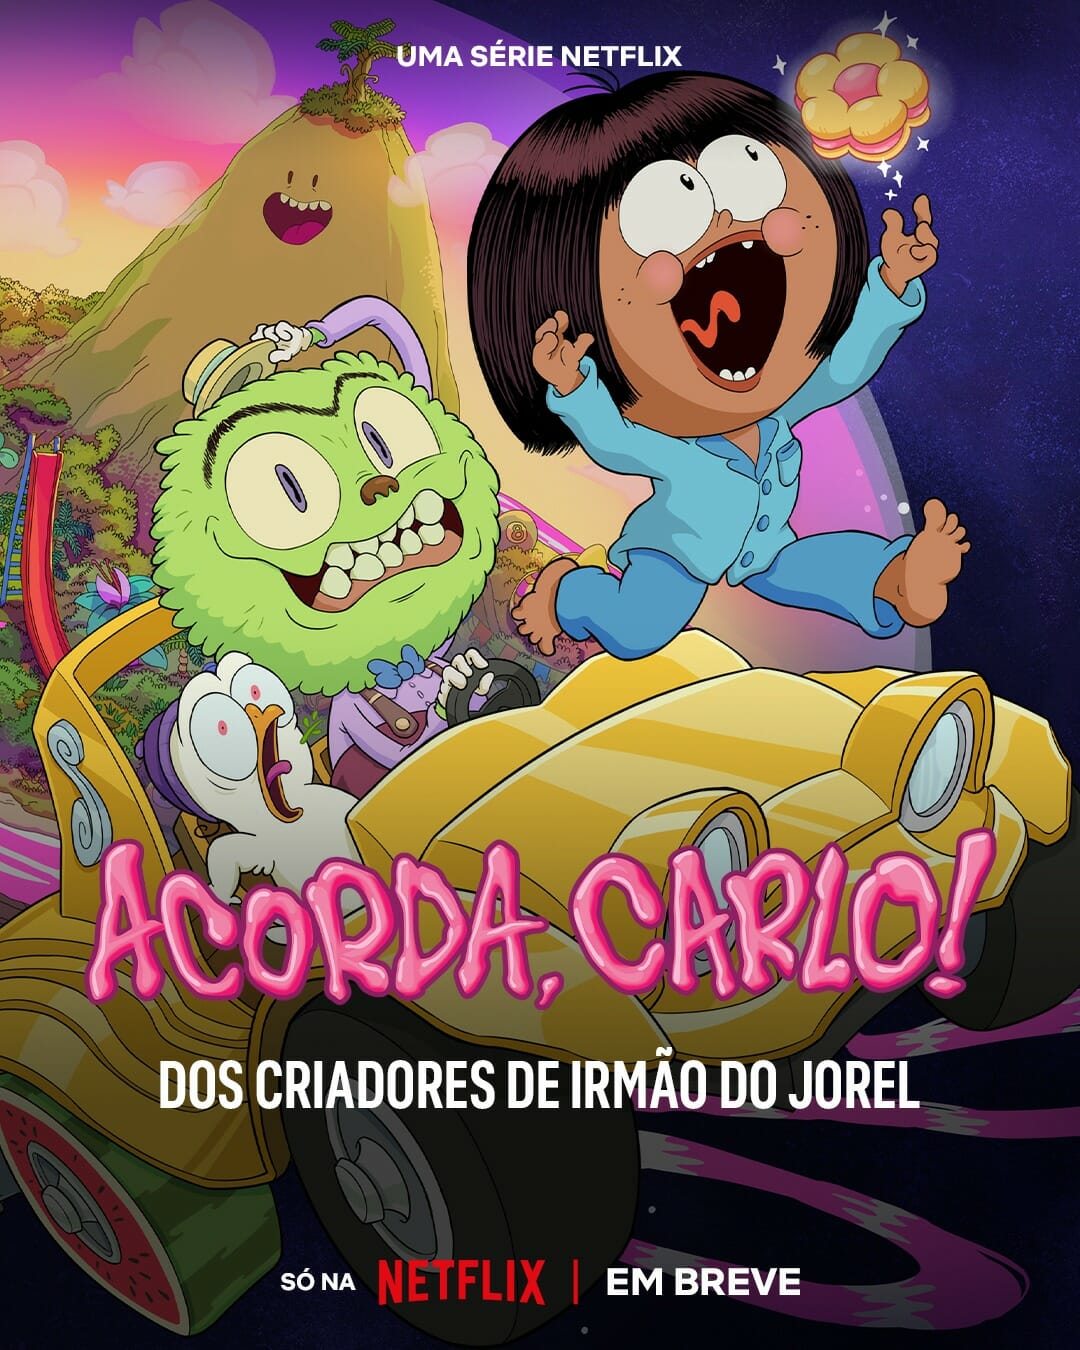 Acorda, Carlo: Série dos criadores de Irmão do Jorel ganha trailer na Netflix 1